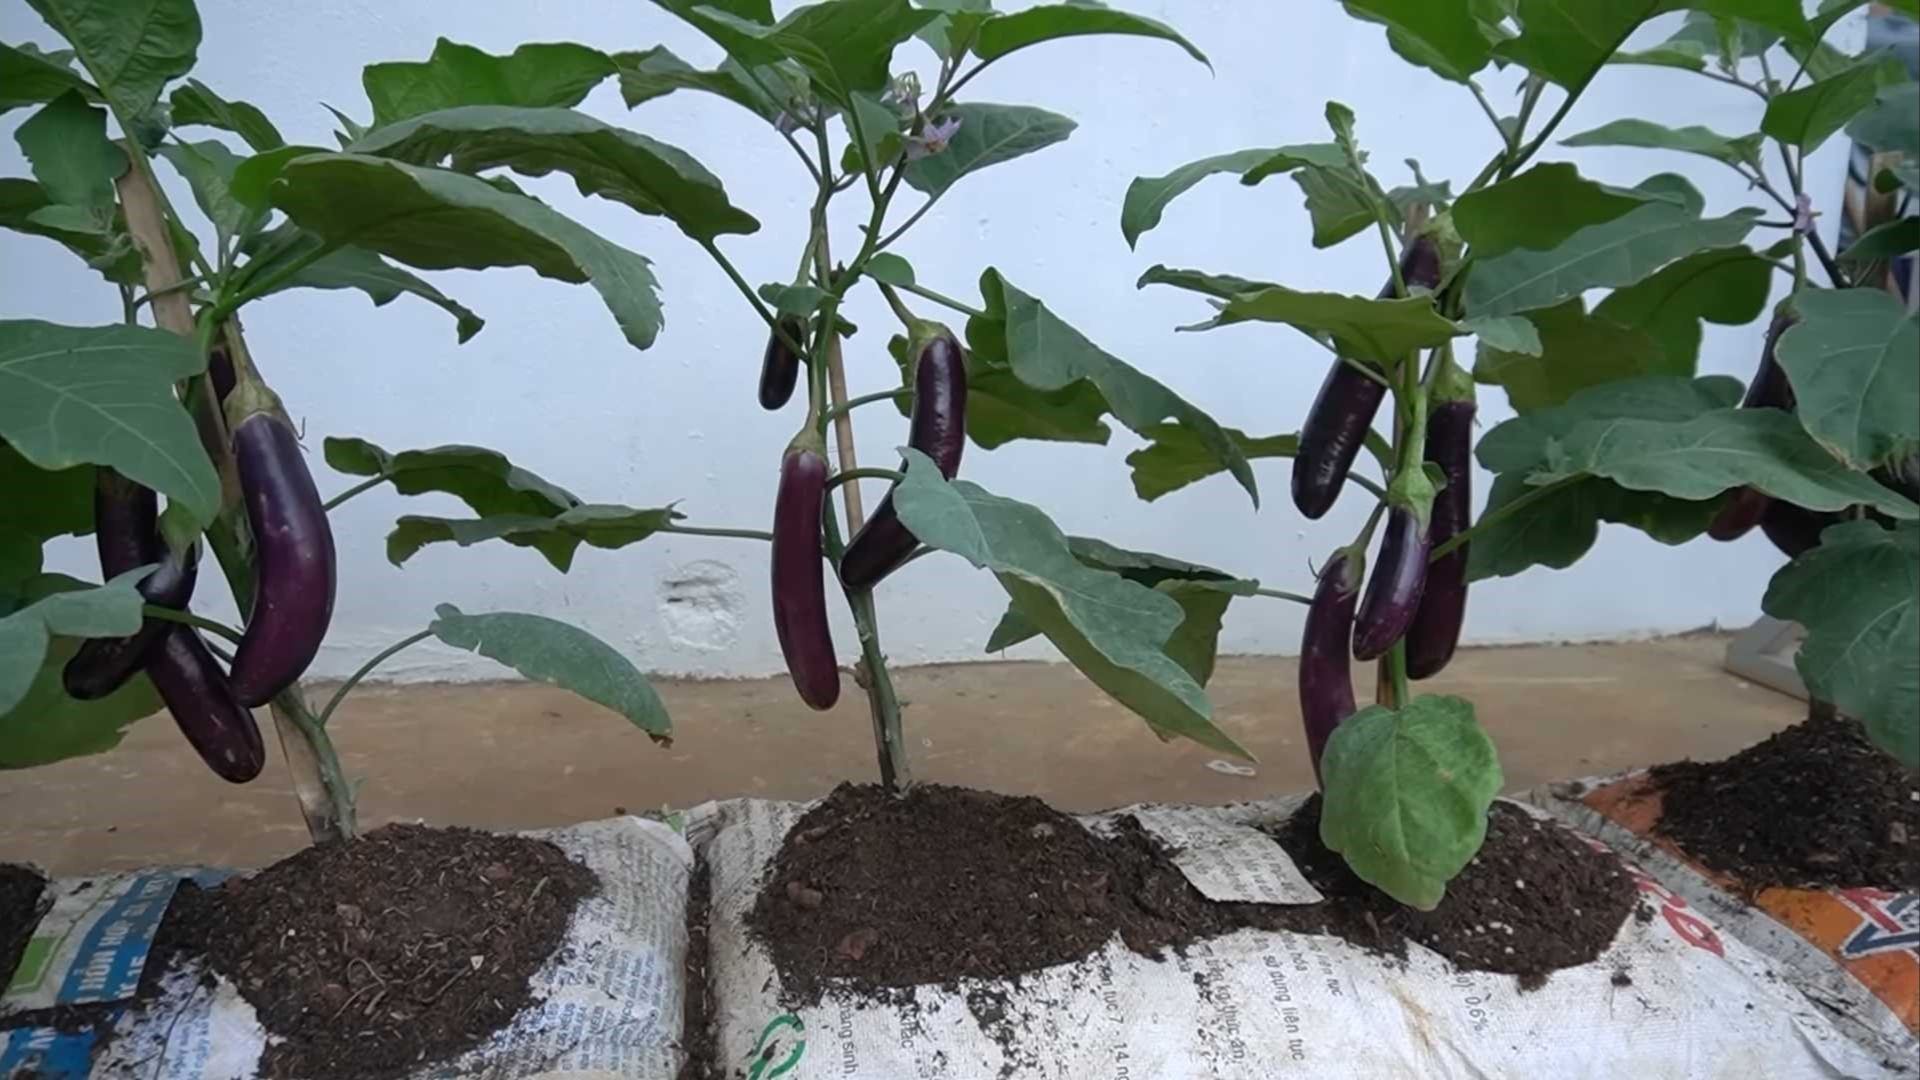 growing eggplants in soil bags